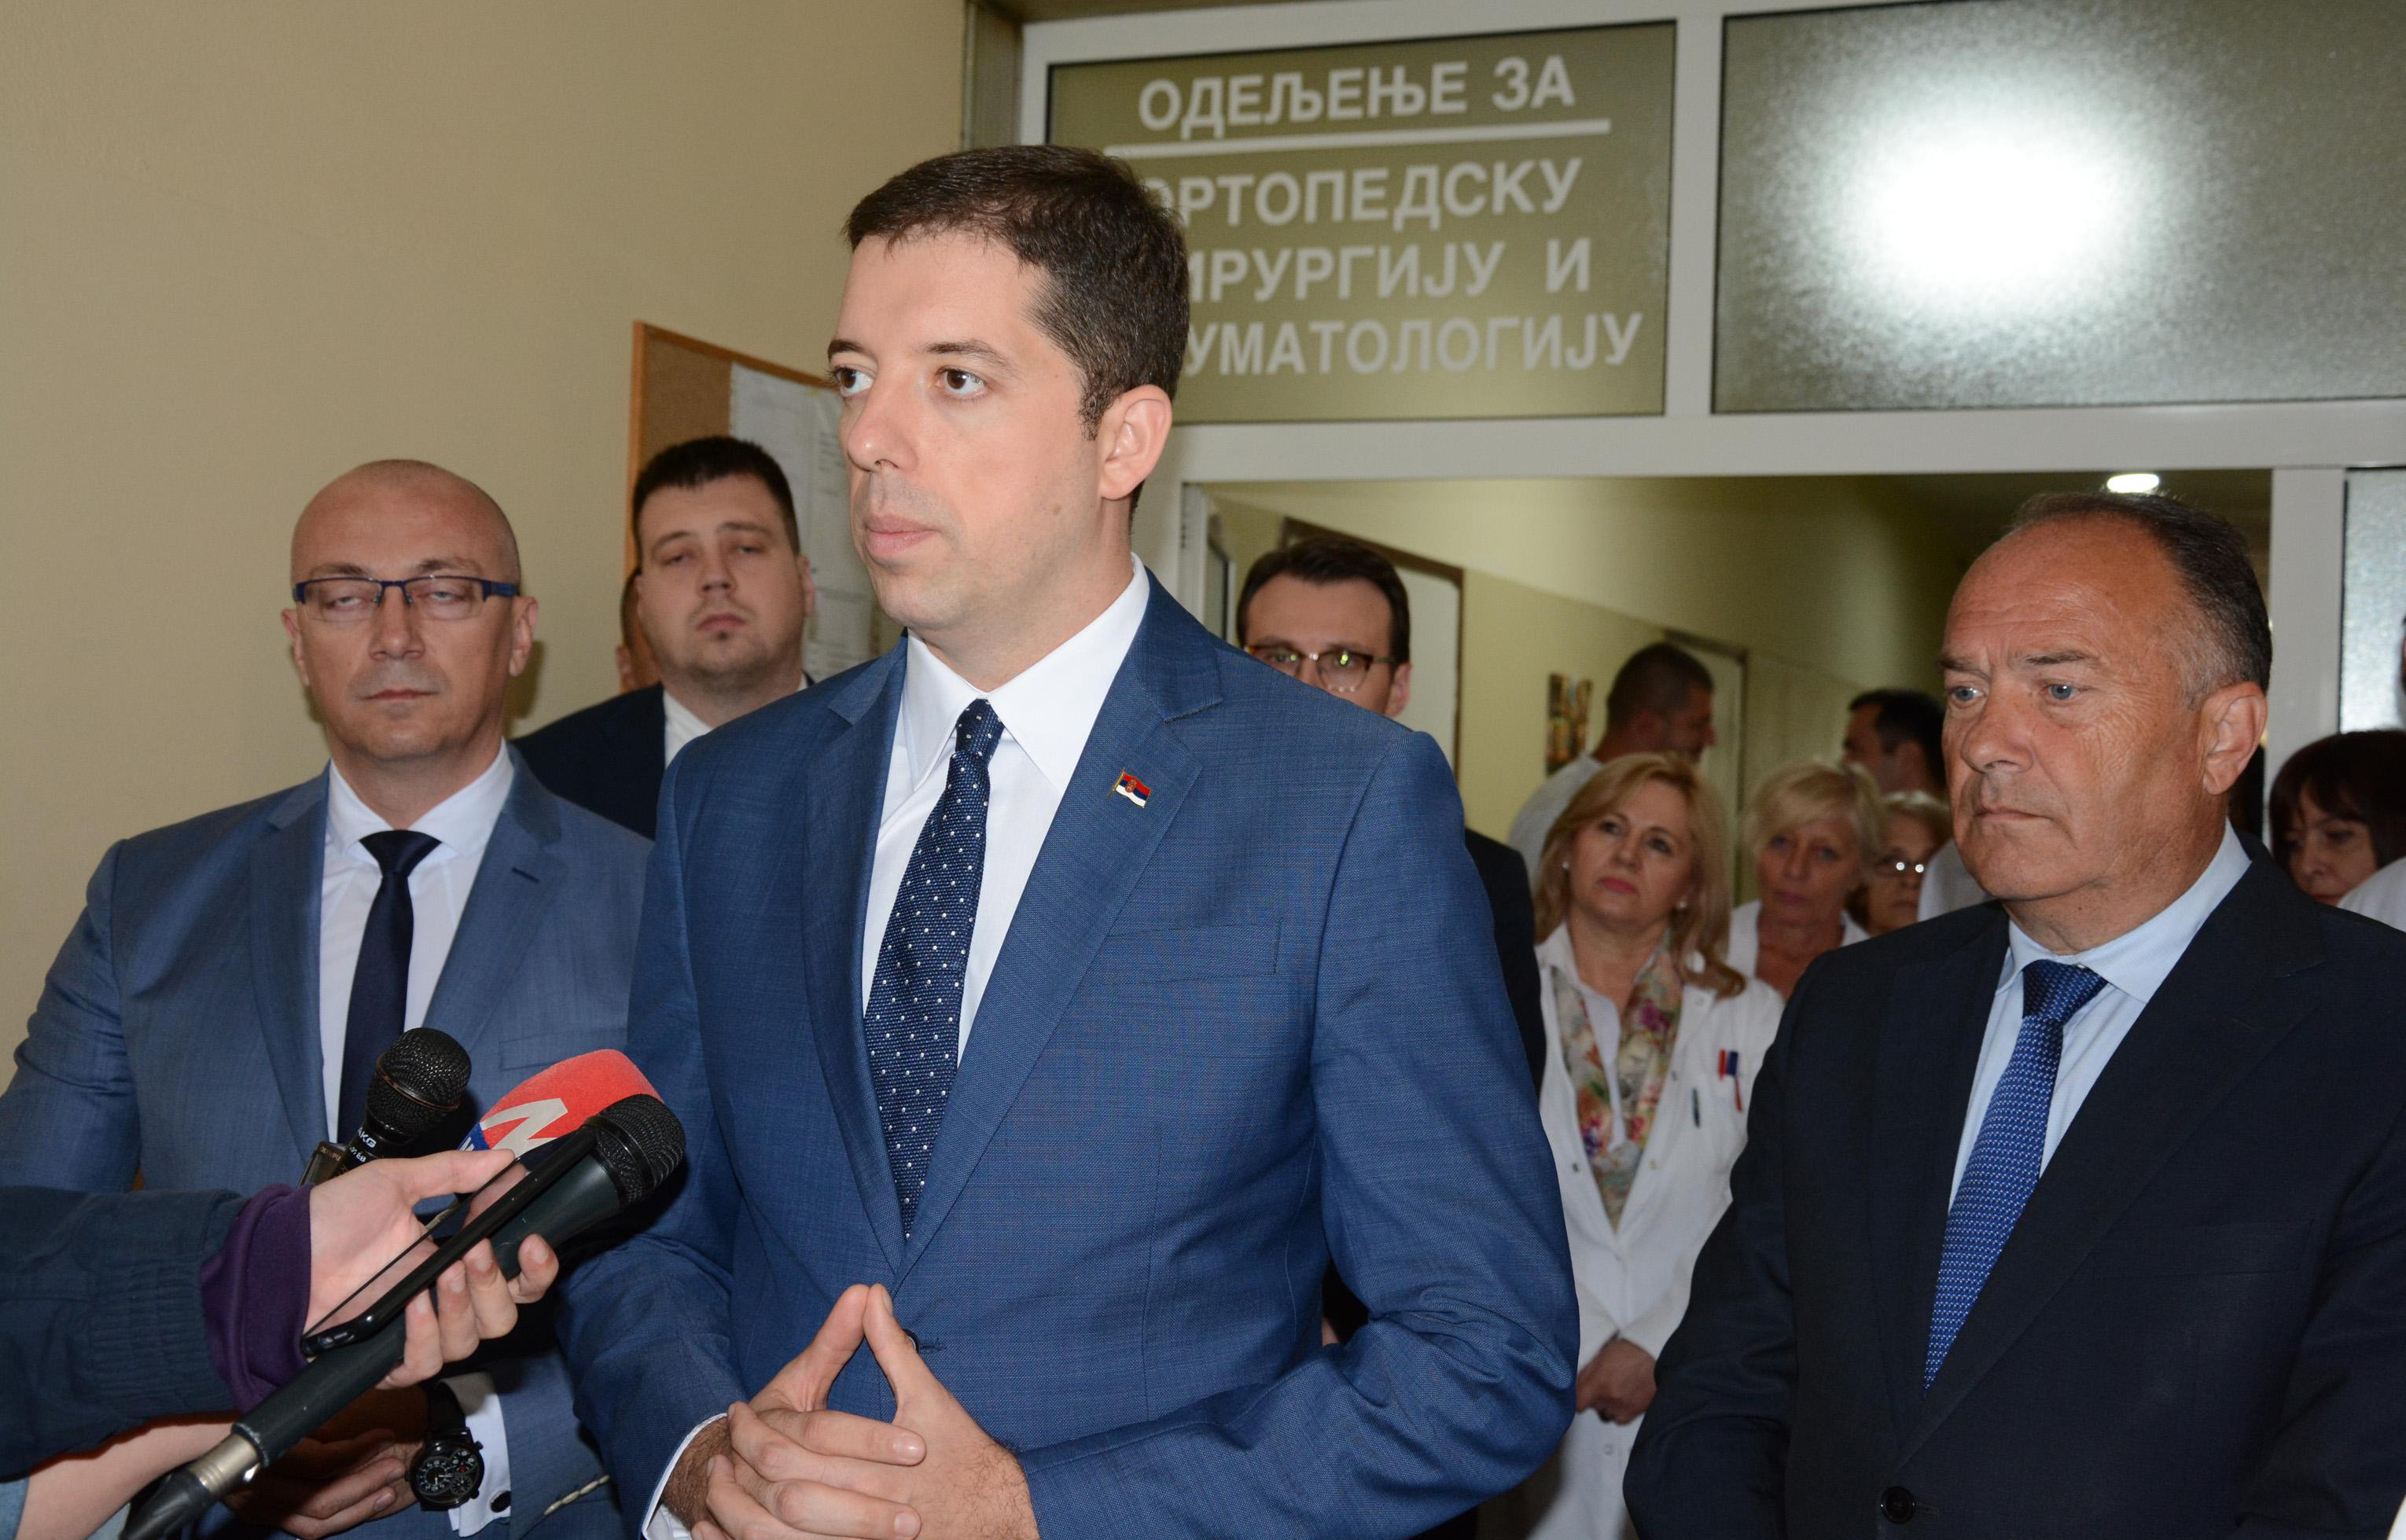 MARKO ĐURIĆ: Mitrović nije ni trebalo da bude iza rešetaka, uhapšen samo zato što je Srbin!